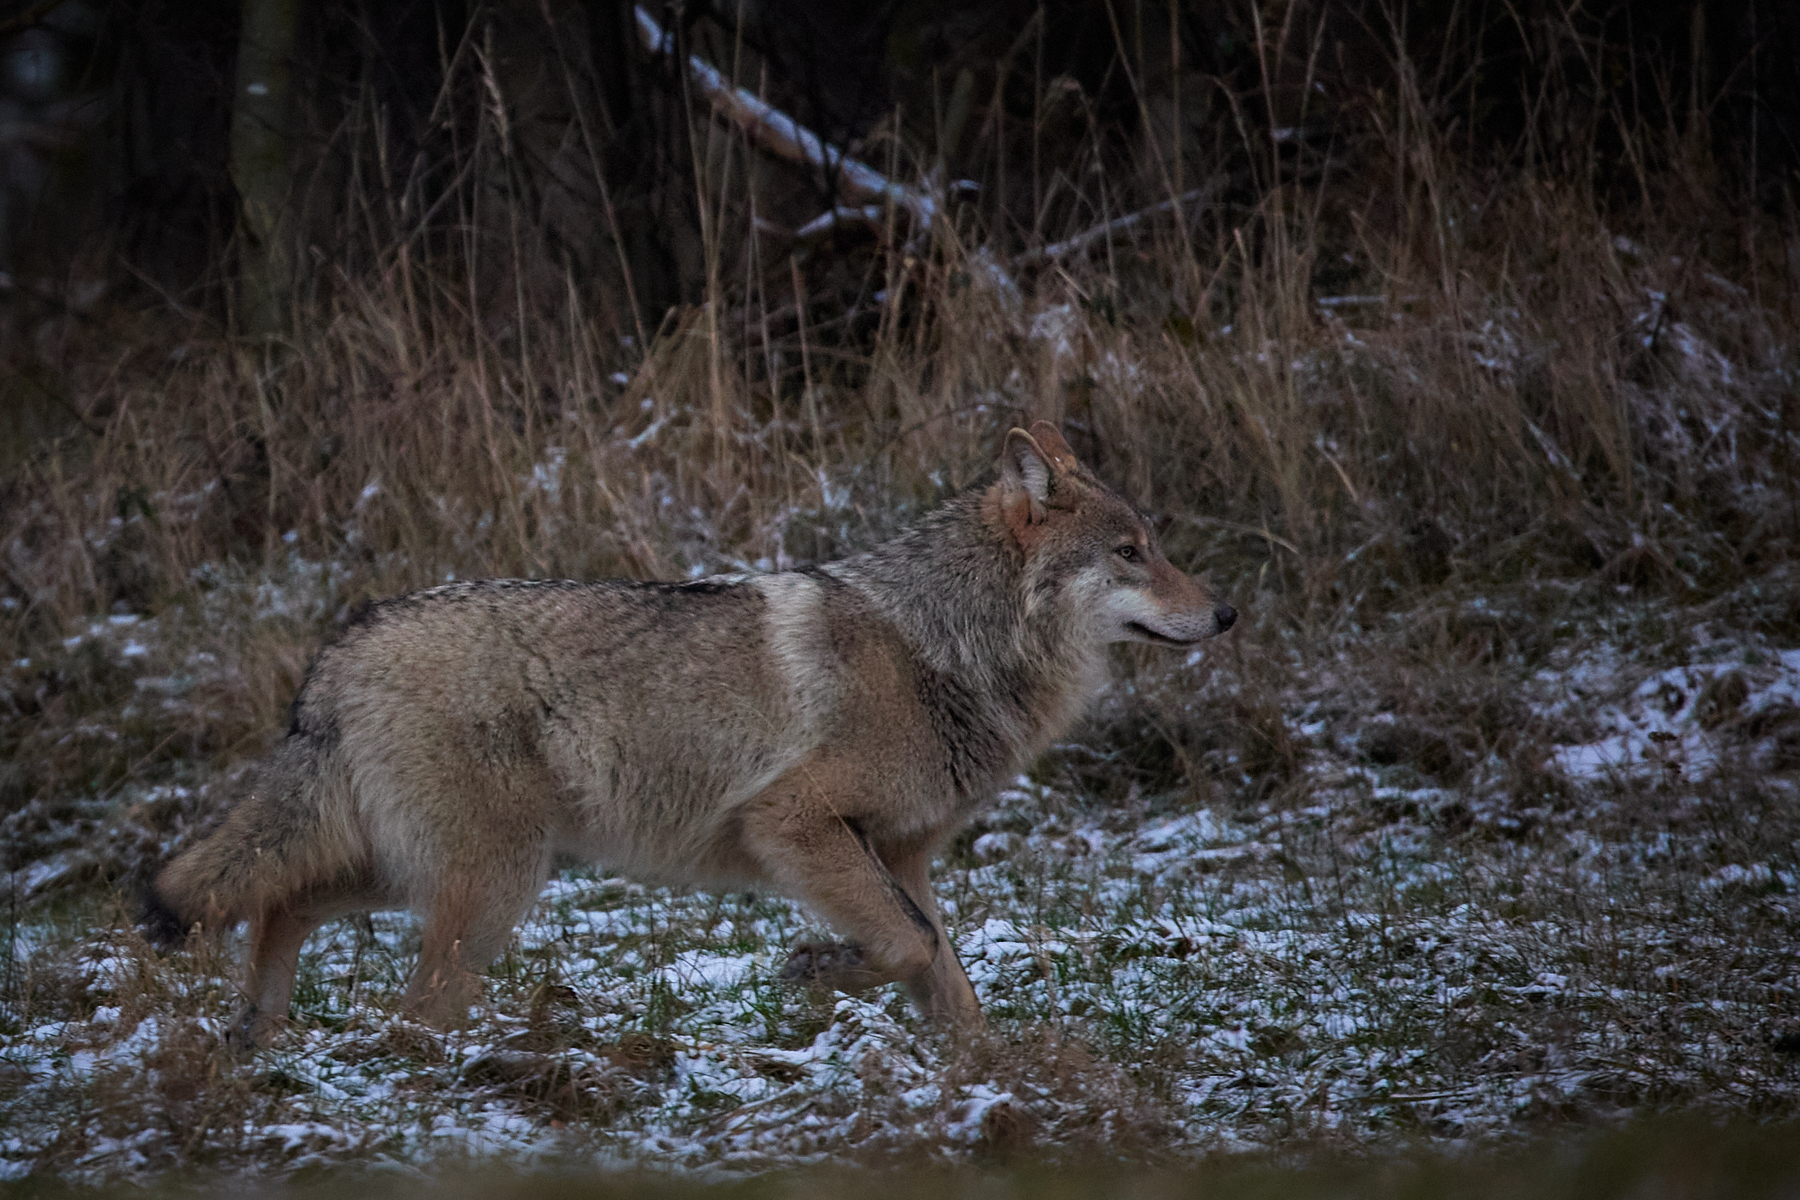 “Są w doskonałej kondycji”. Znów udało się sfotografować wilki z wielkopolskiego lasu